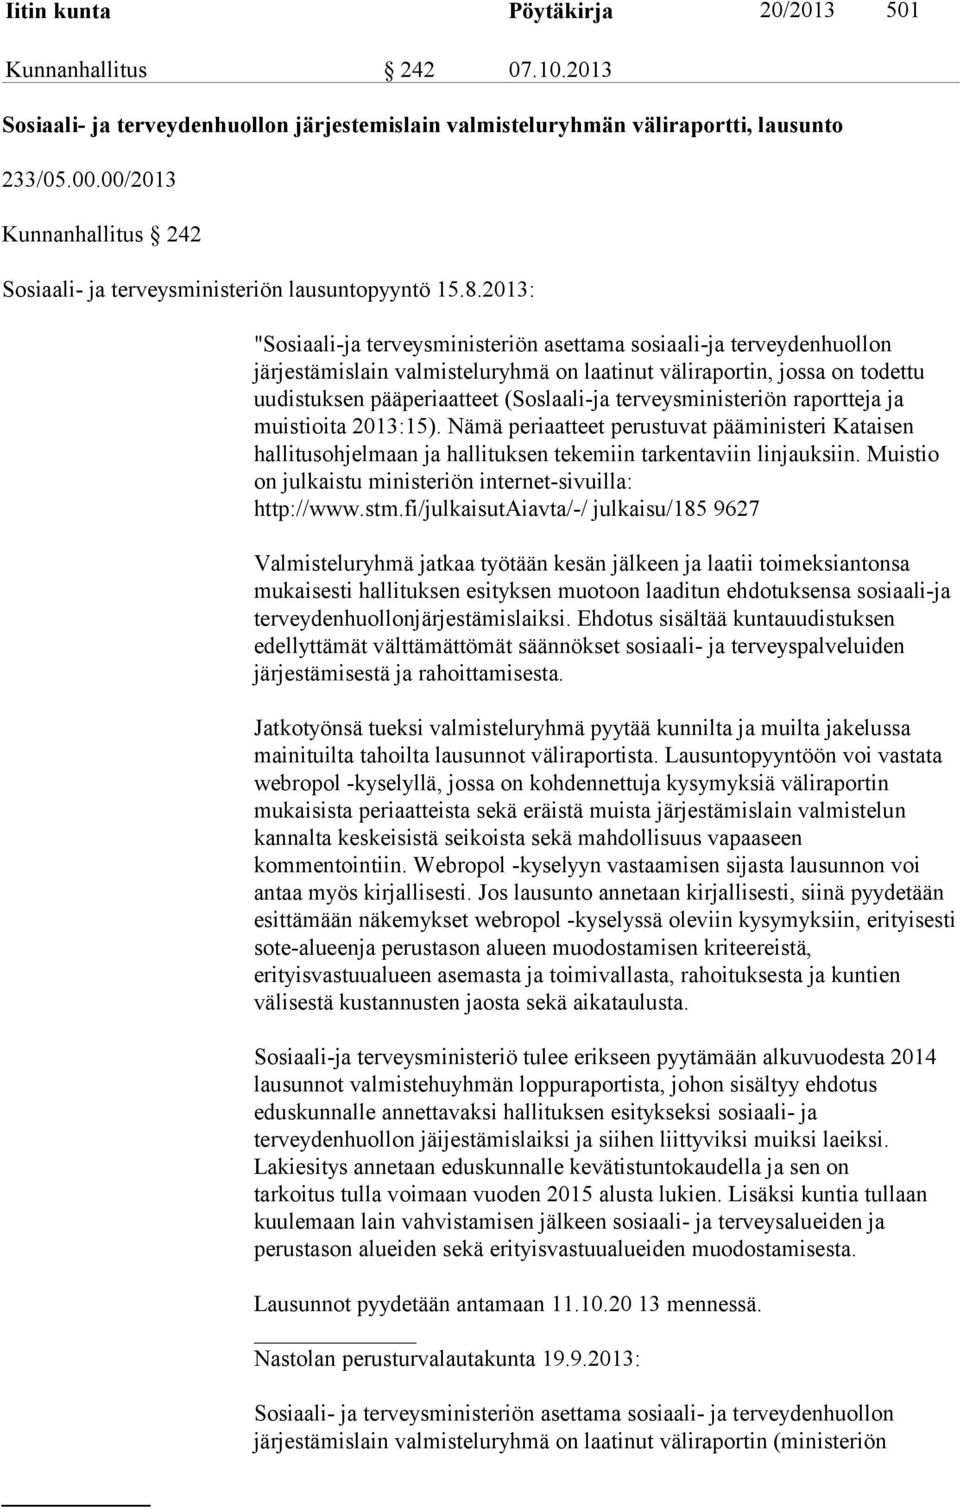 2013: "Sosiaali-ja terveysministeriön asettama sosiaali-ja terveydenhuollon järjestämislain valmisteluryhmä on laatinut väliraportin, jossa on todettu uudistuksen pääperiaatteet (Soslaali-ja